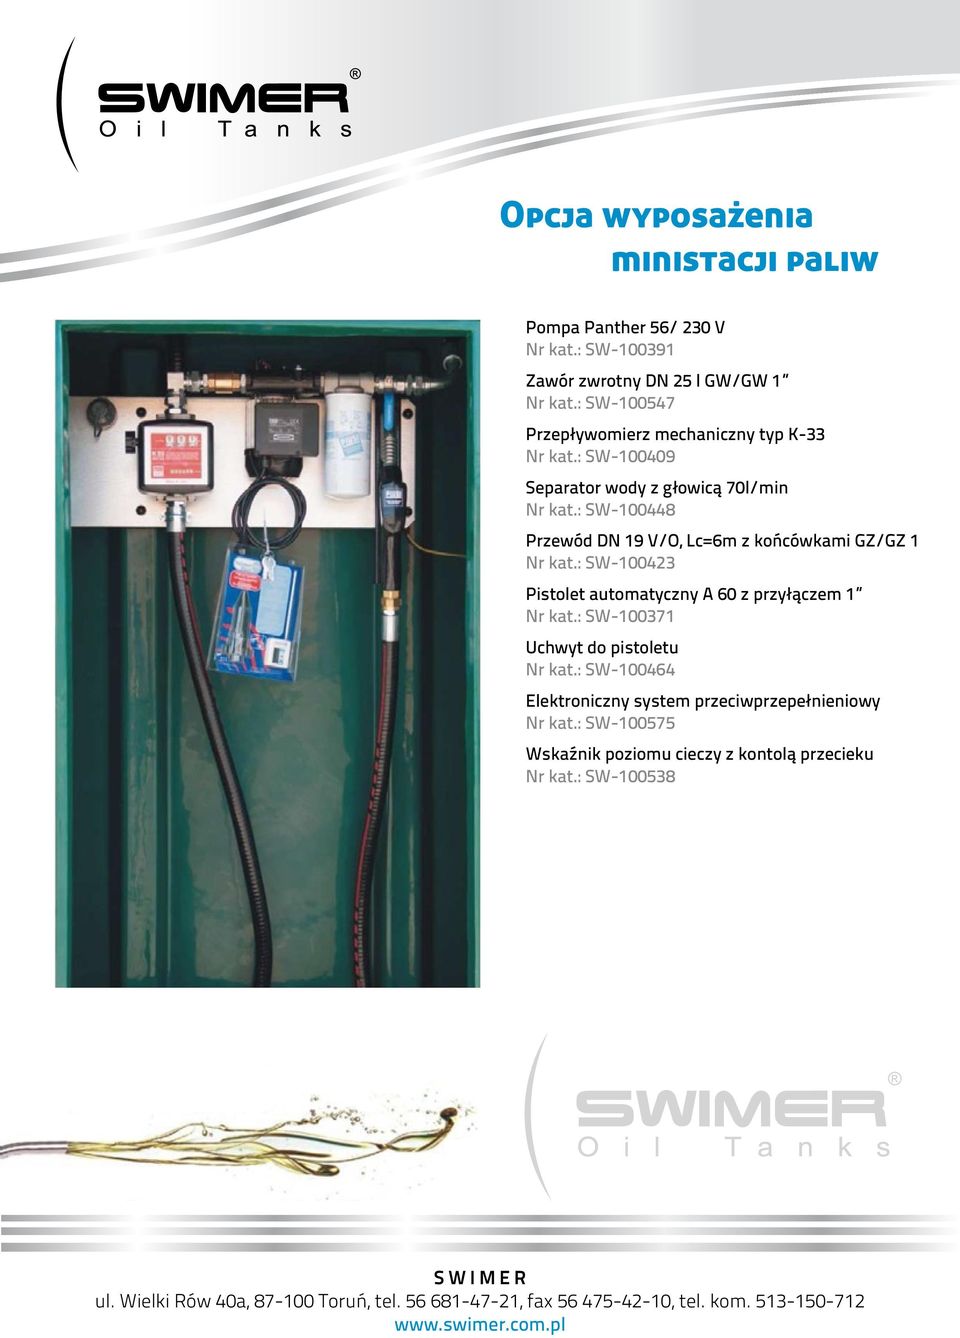 : SW-100409 Separator wody z głowicą 70l/min Nr kat.